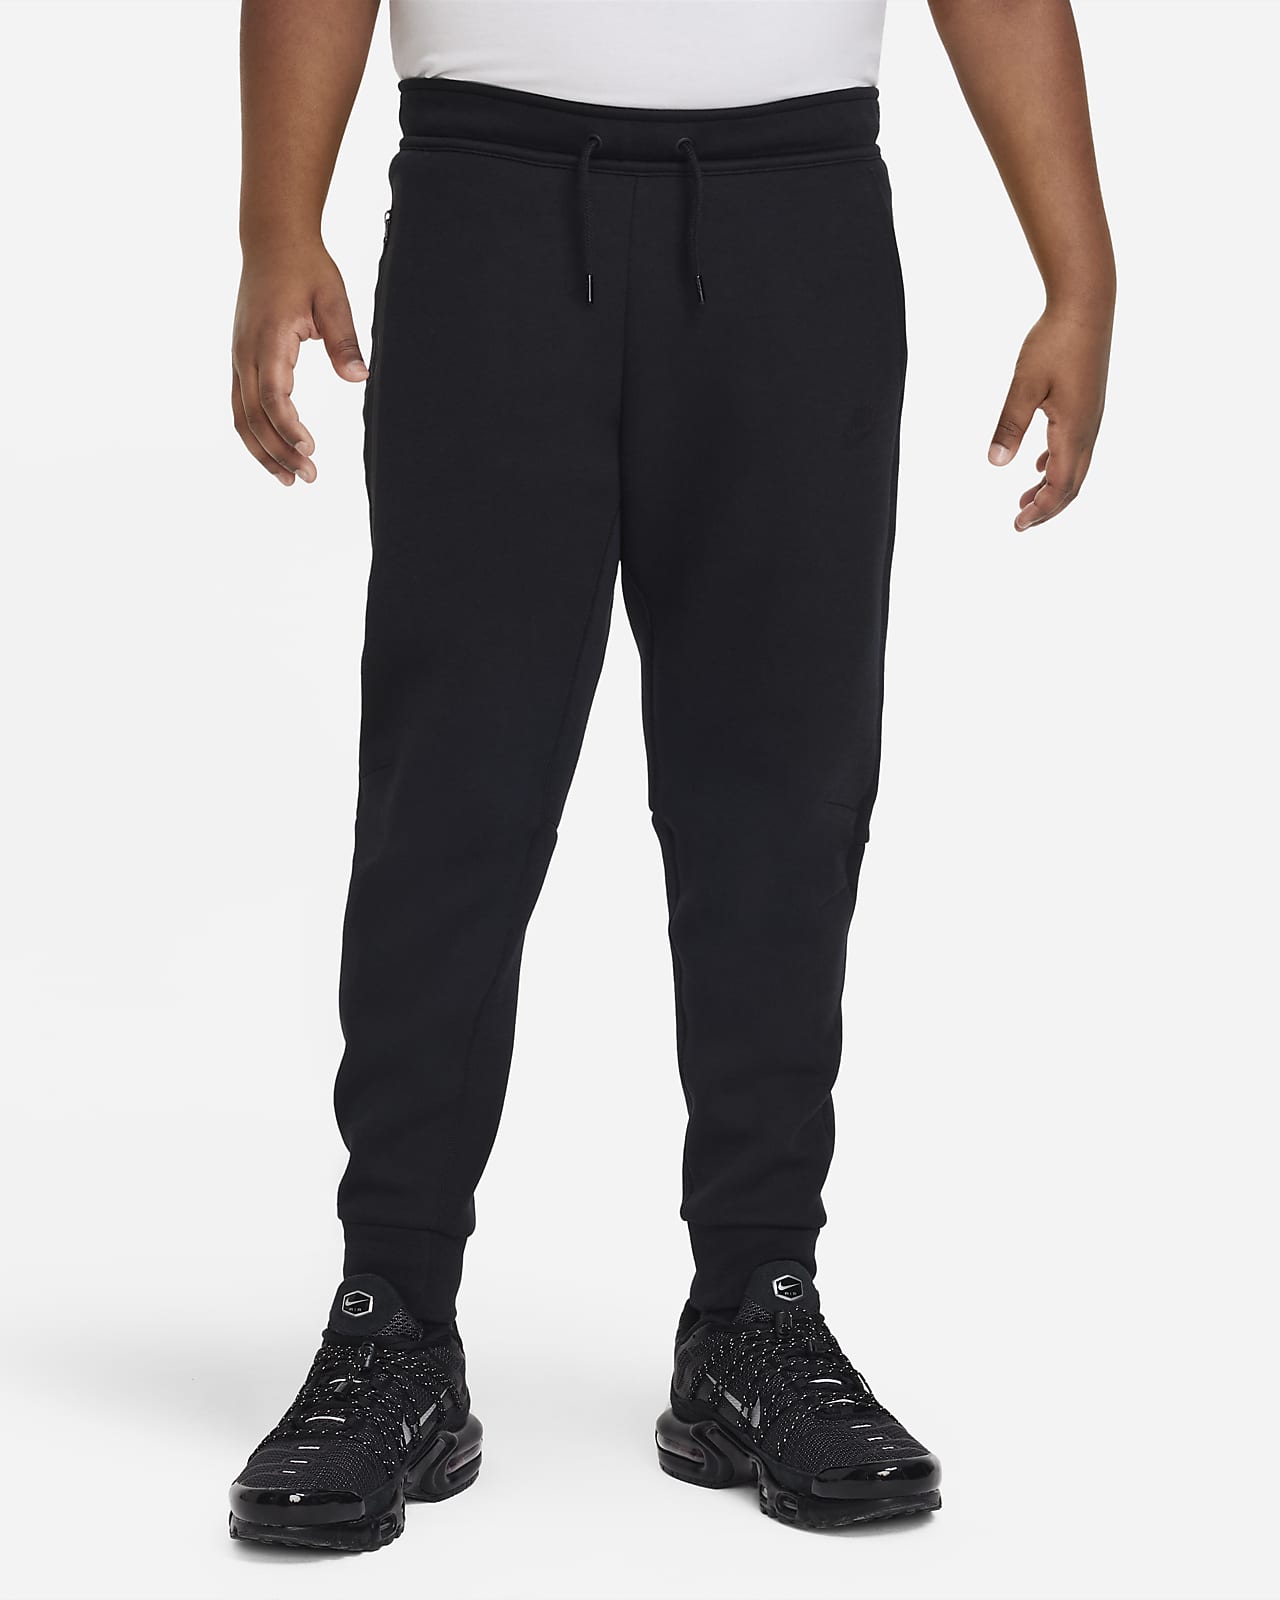 Nike Sportswear Tech Fleece Hose für ältere Kinder (Jungen) (erweiterte Größe)